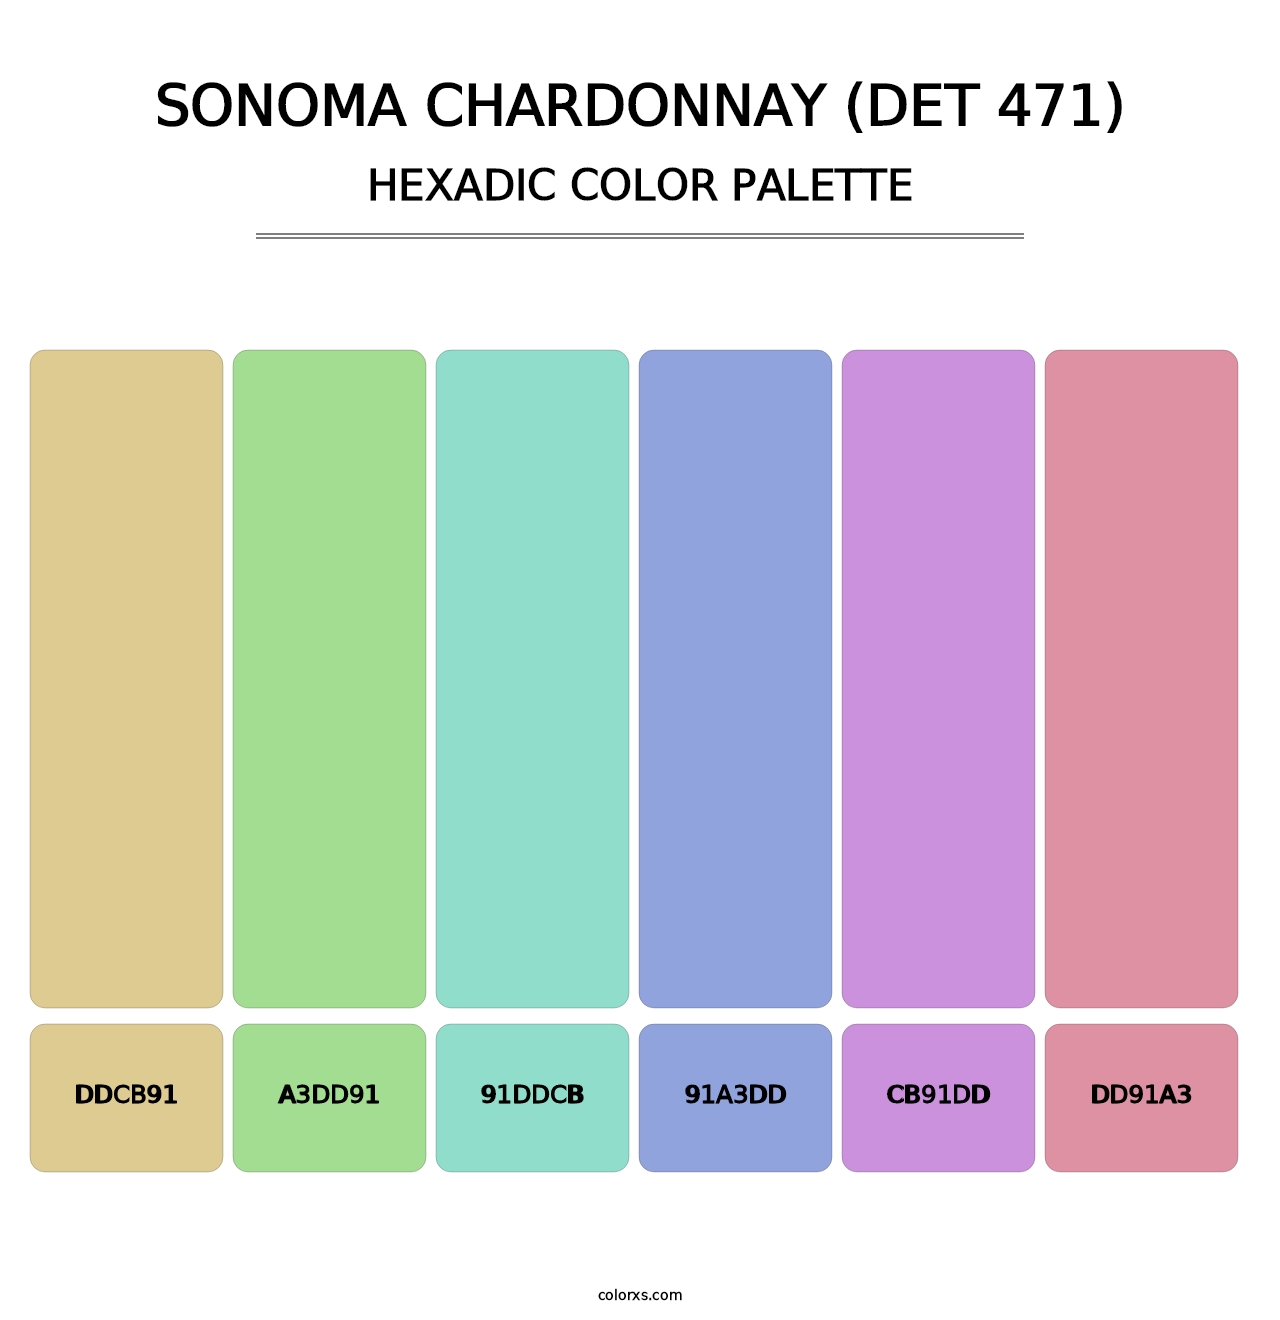 Sonoma Chardonnay (DET 471) - Hexadic Color Palette